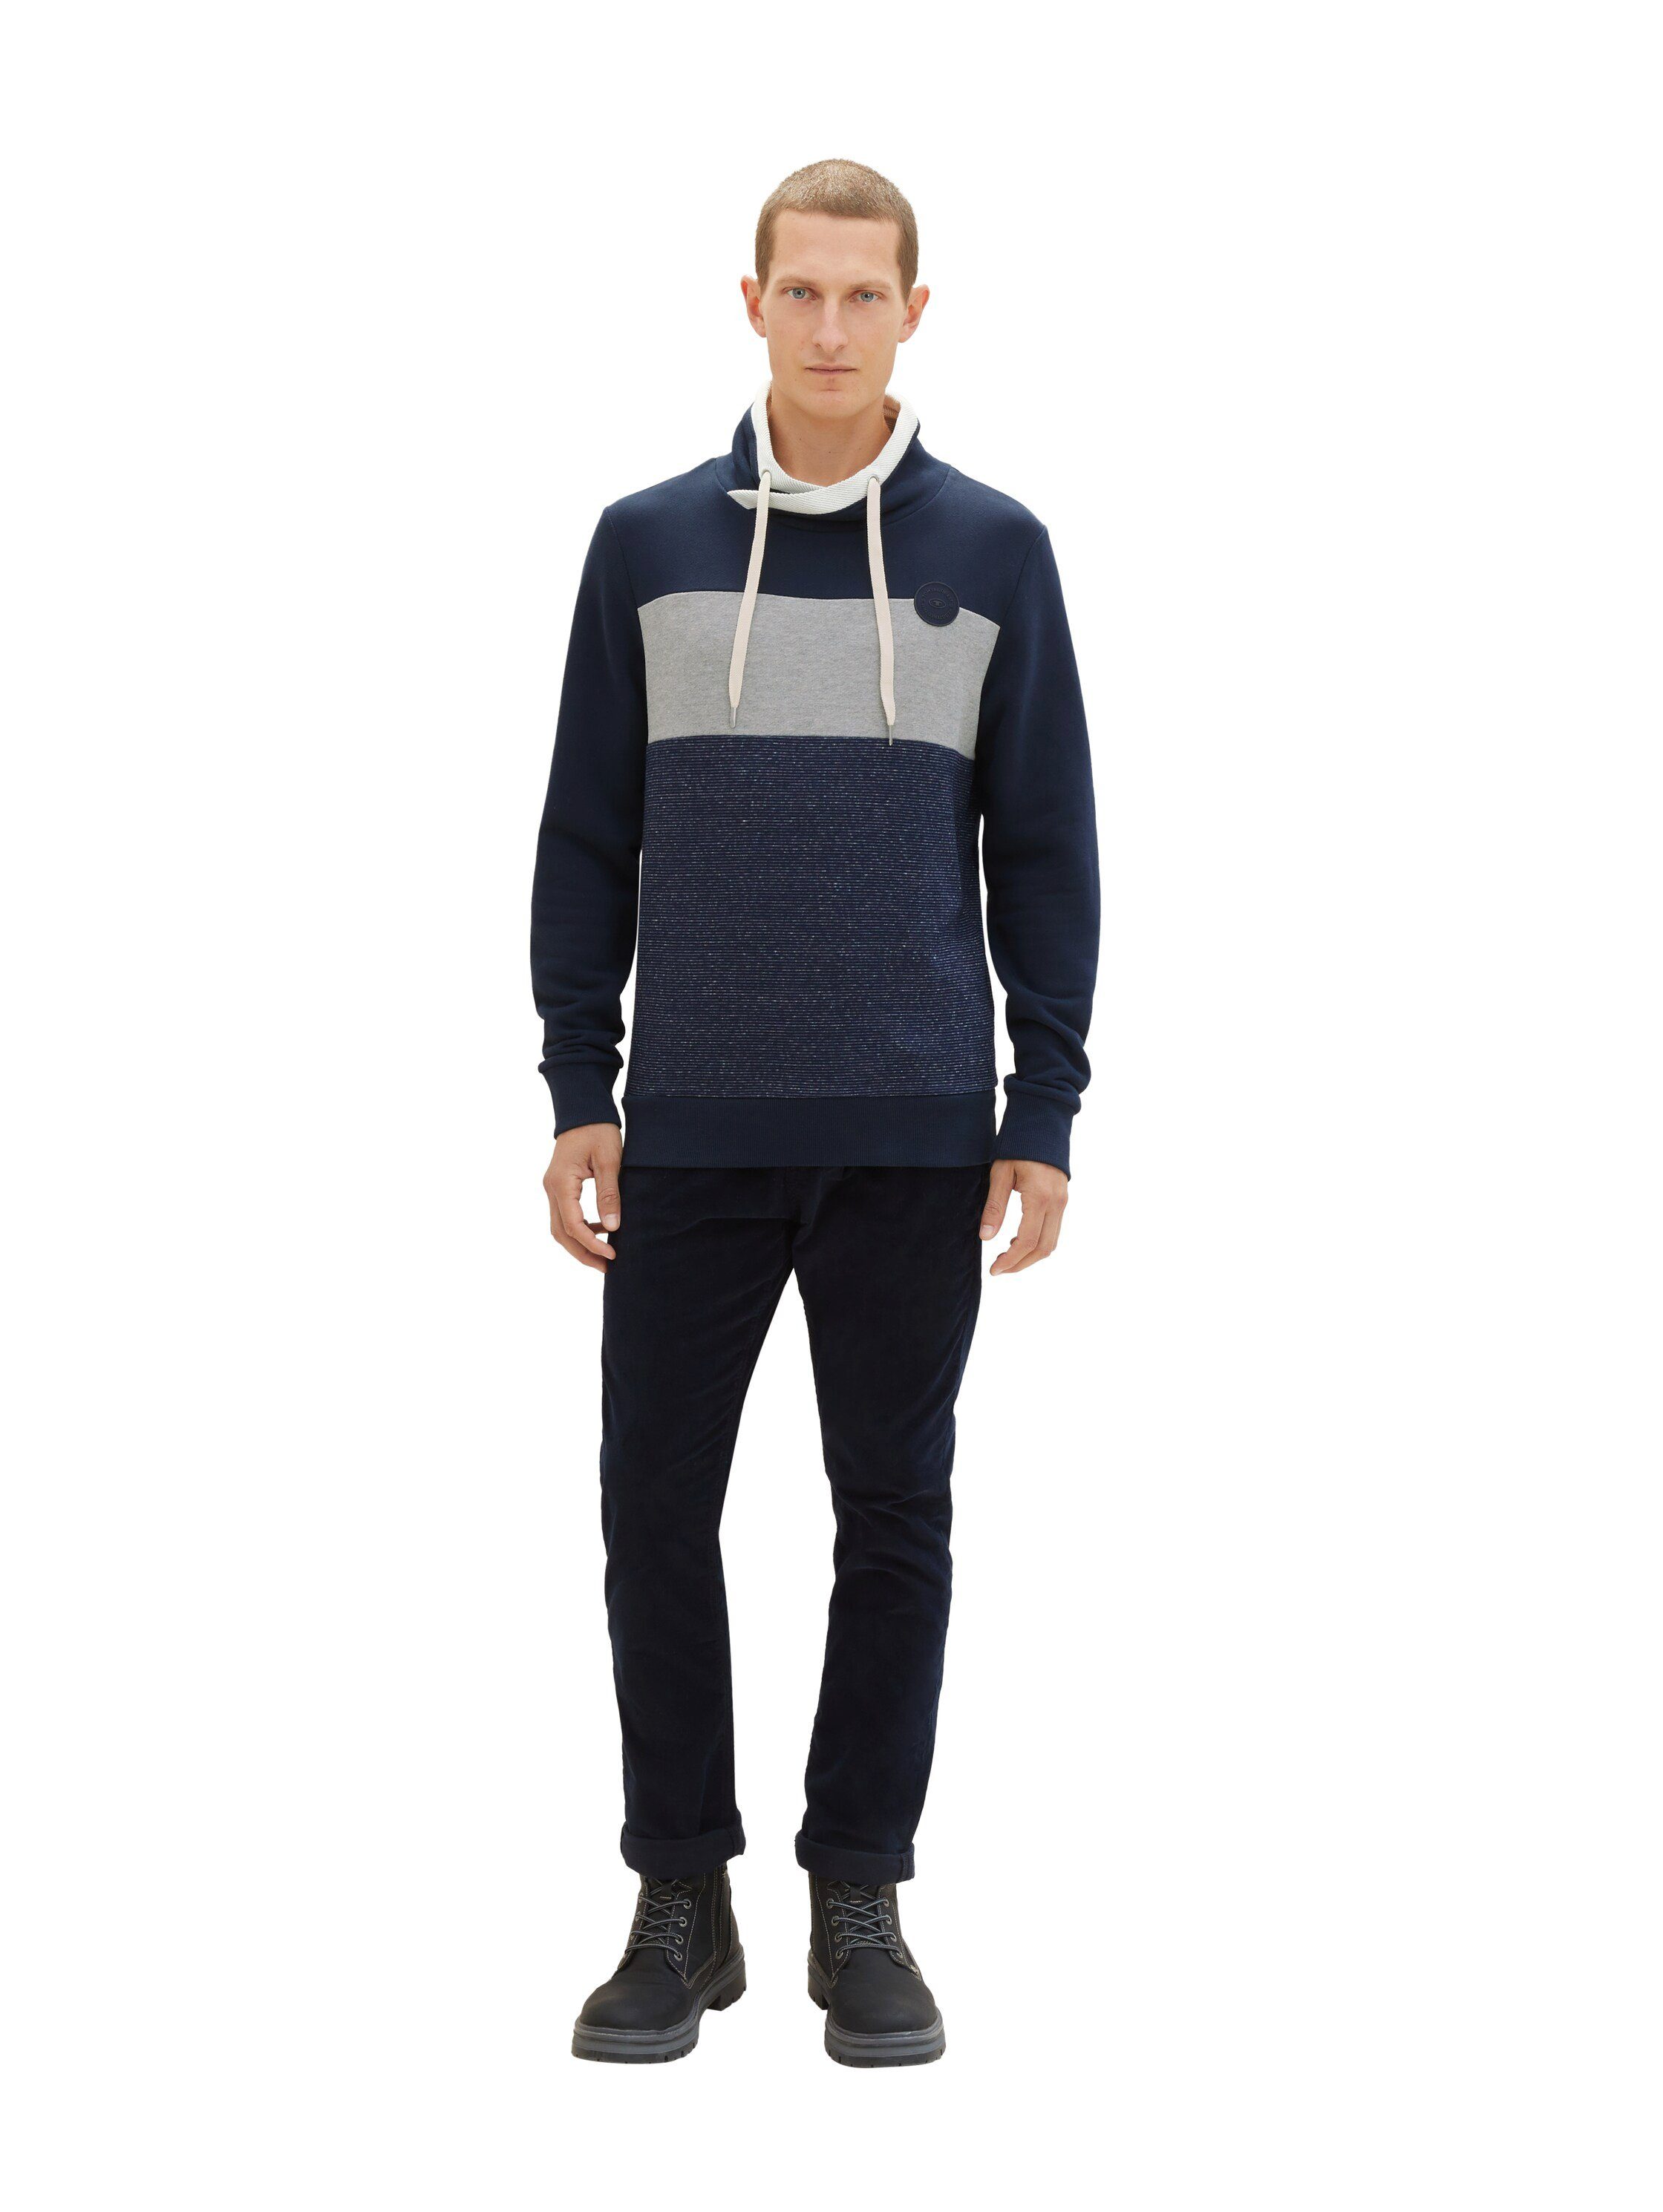 TOM TAILOR Sweatshirt Colorblocking grey und dark mit Stehkragen mineral